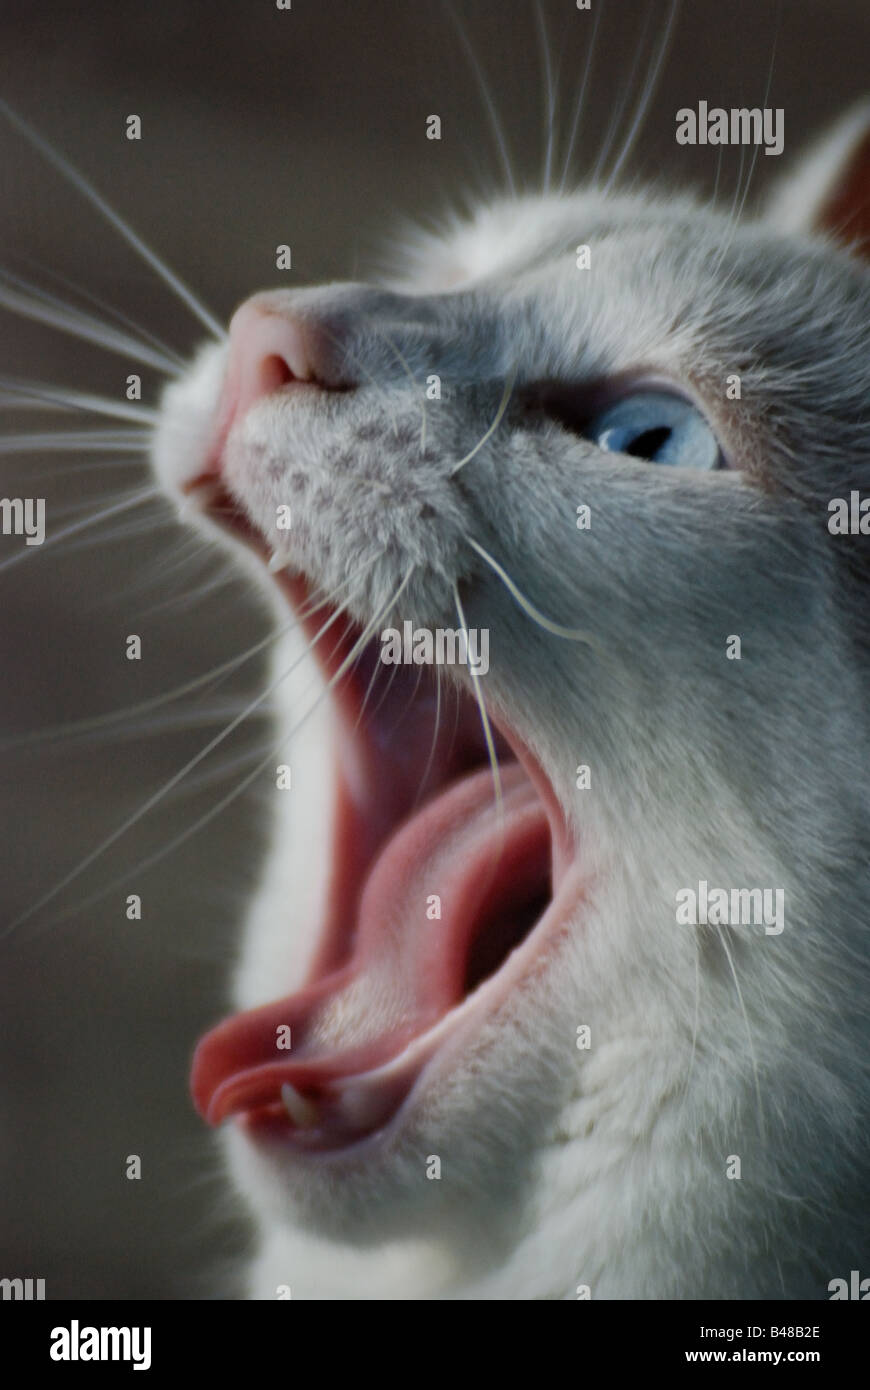 Toronto, Canada 2008: A blue-eyed white cat yawning Stock Photo